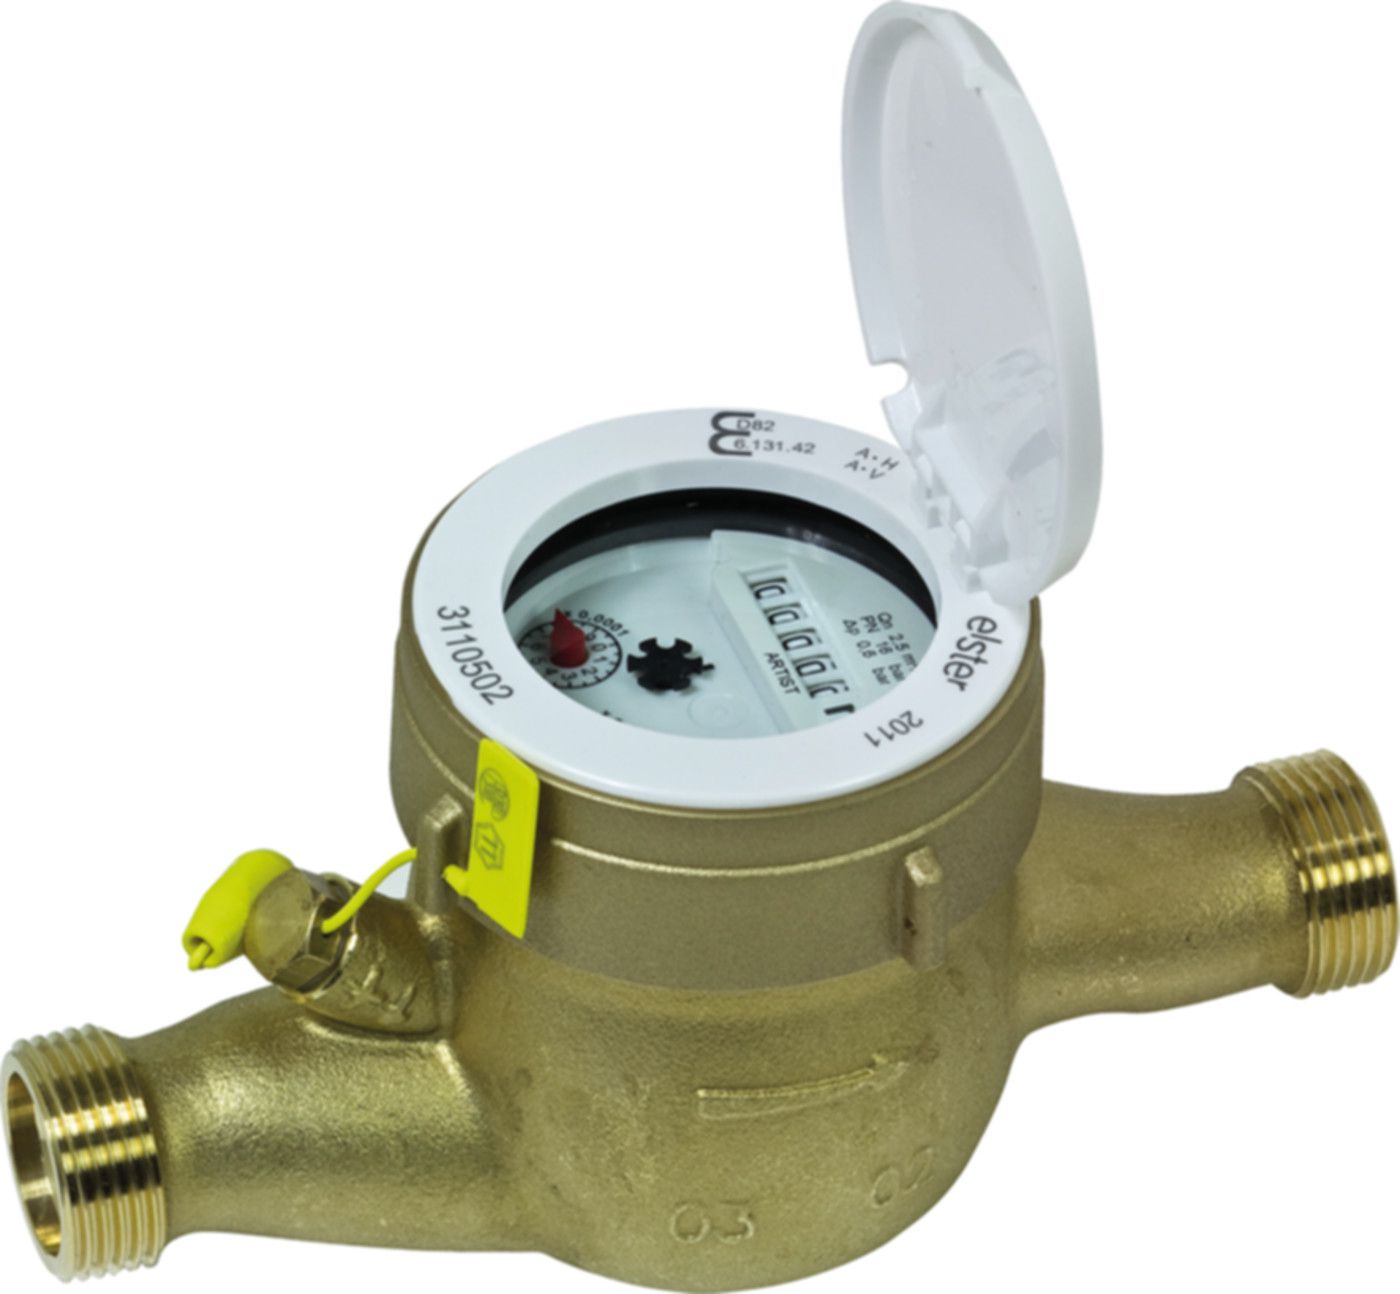 Hauswasserzähler warm F 2.5 m3/h L = 105 mm G 1" blombiert 16785 - ISTA - Wärme- / Wasserzähler